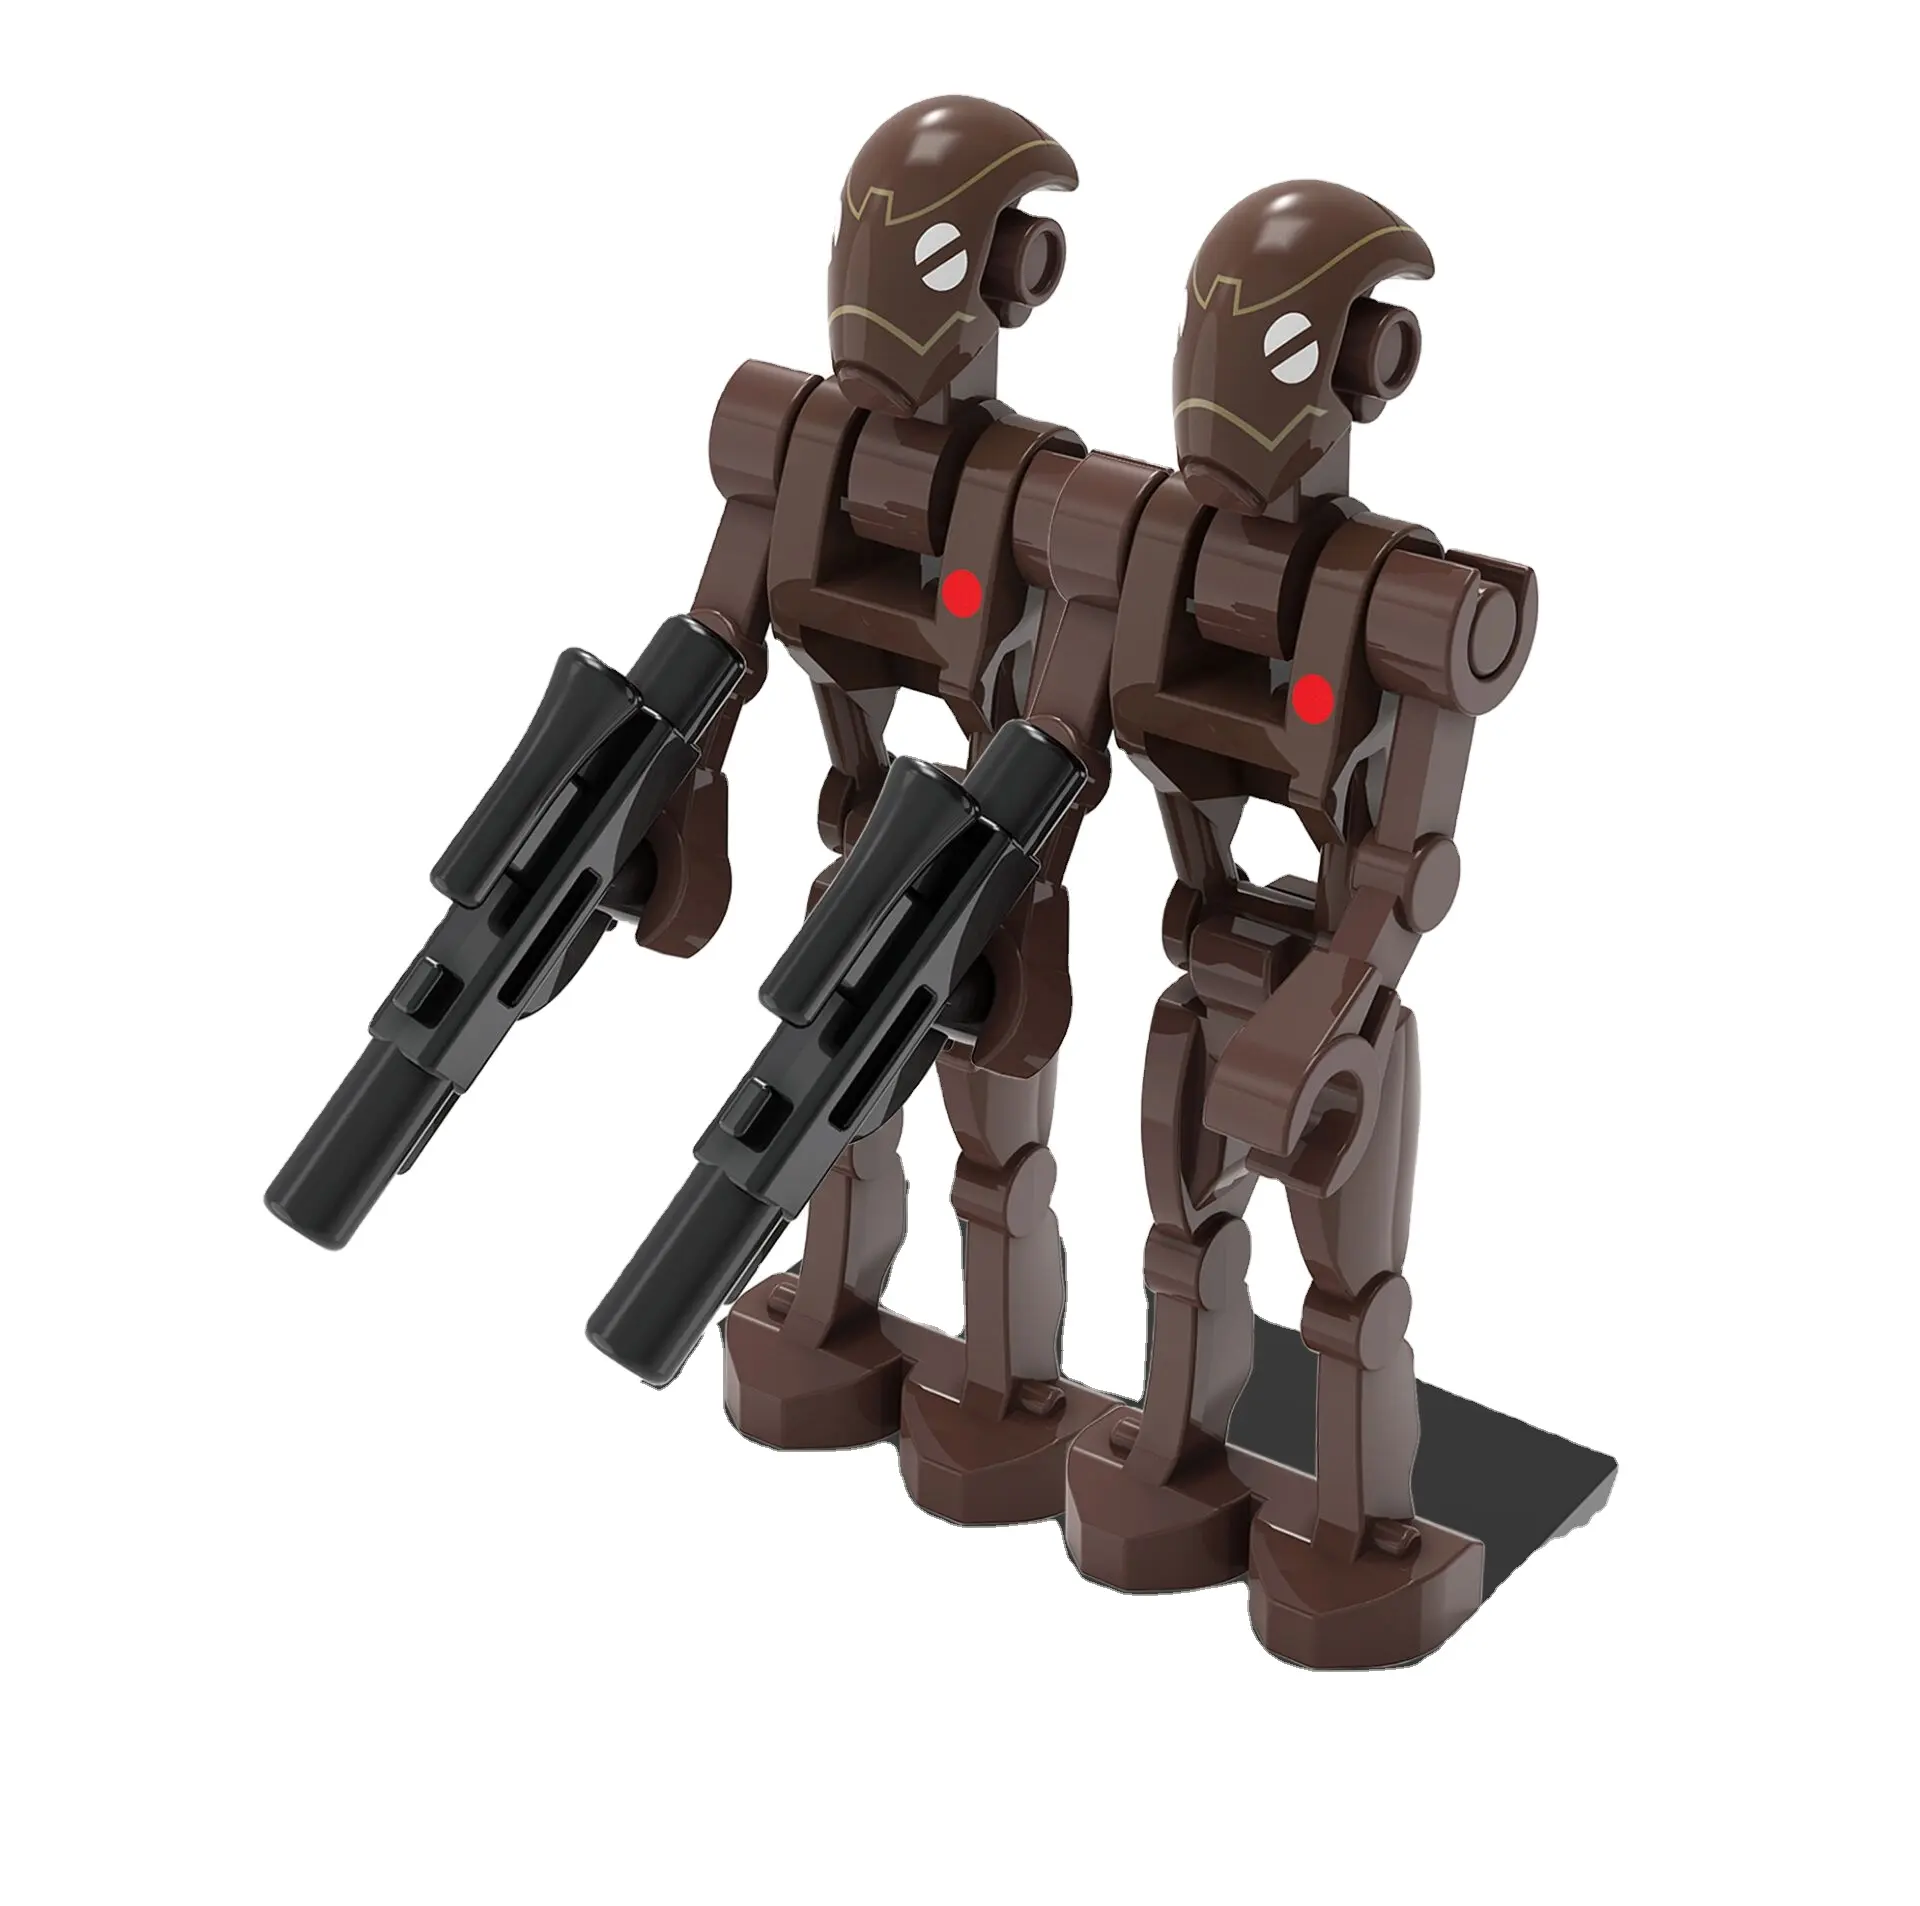 新しいピース/セットスターチョコレートトルーパーロボットクローンstromTrooperキャラクターミニビルディングブロックキッズJujuetesおもちゃフィギュア